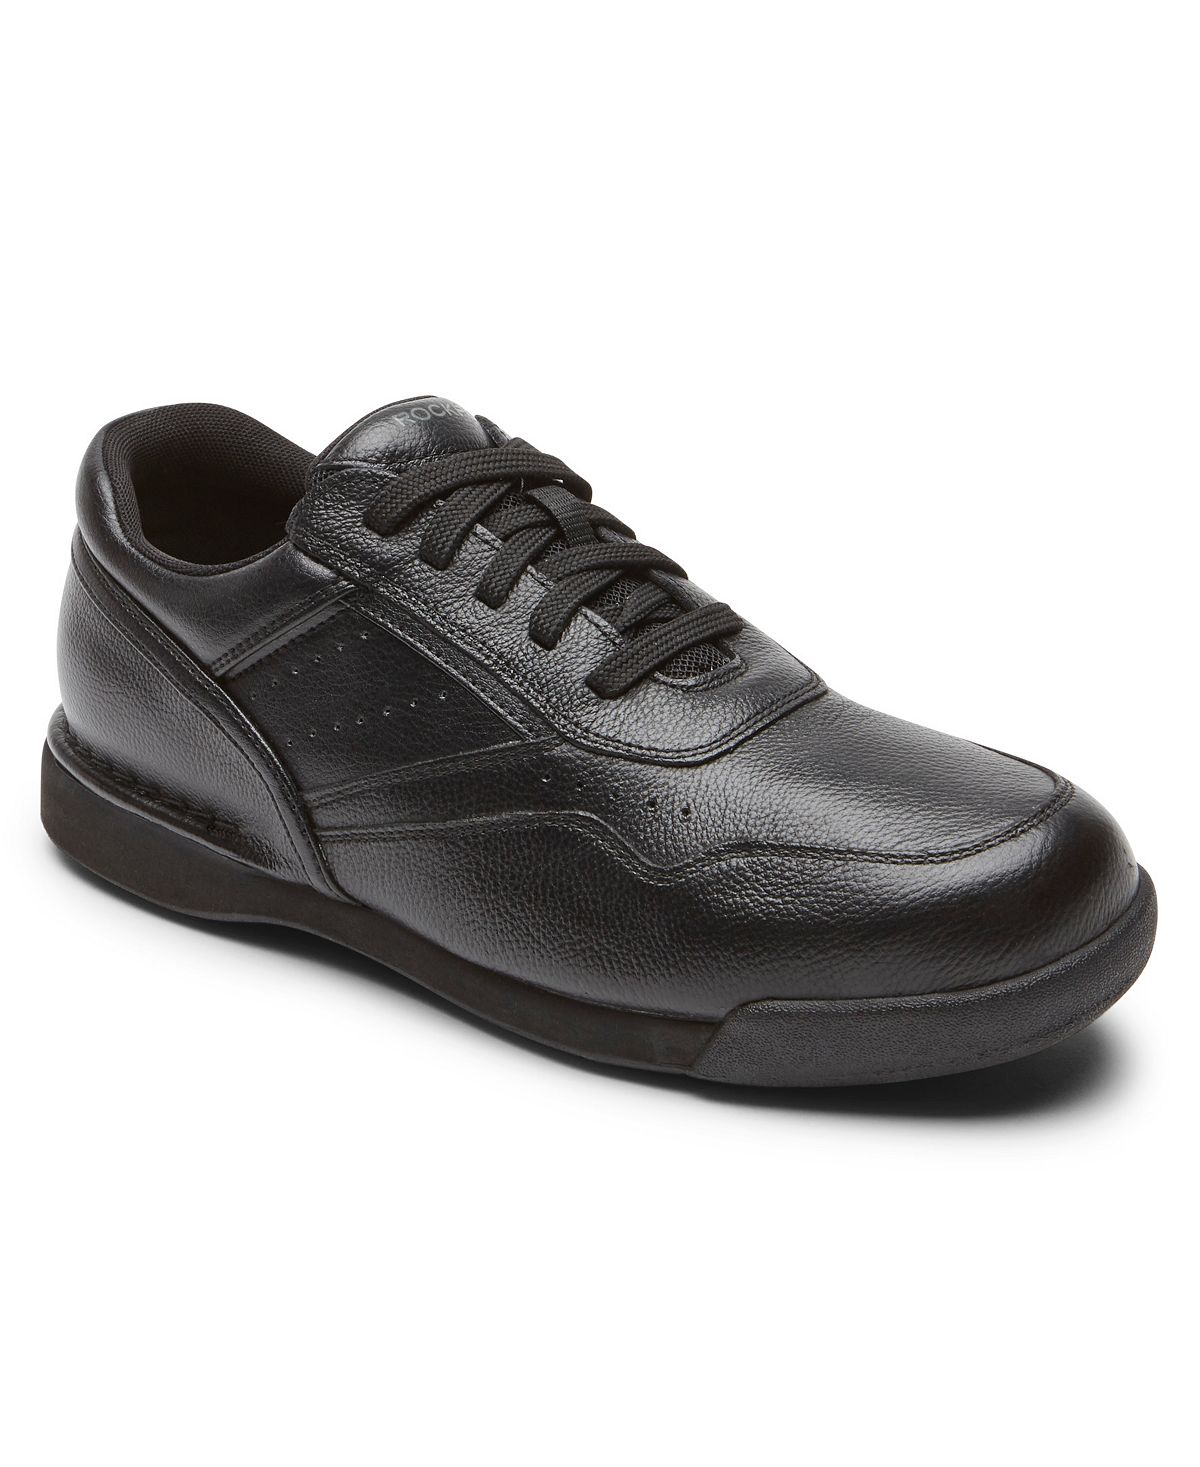 Мужская обувь m7100 milprowalker Rockport, черный